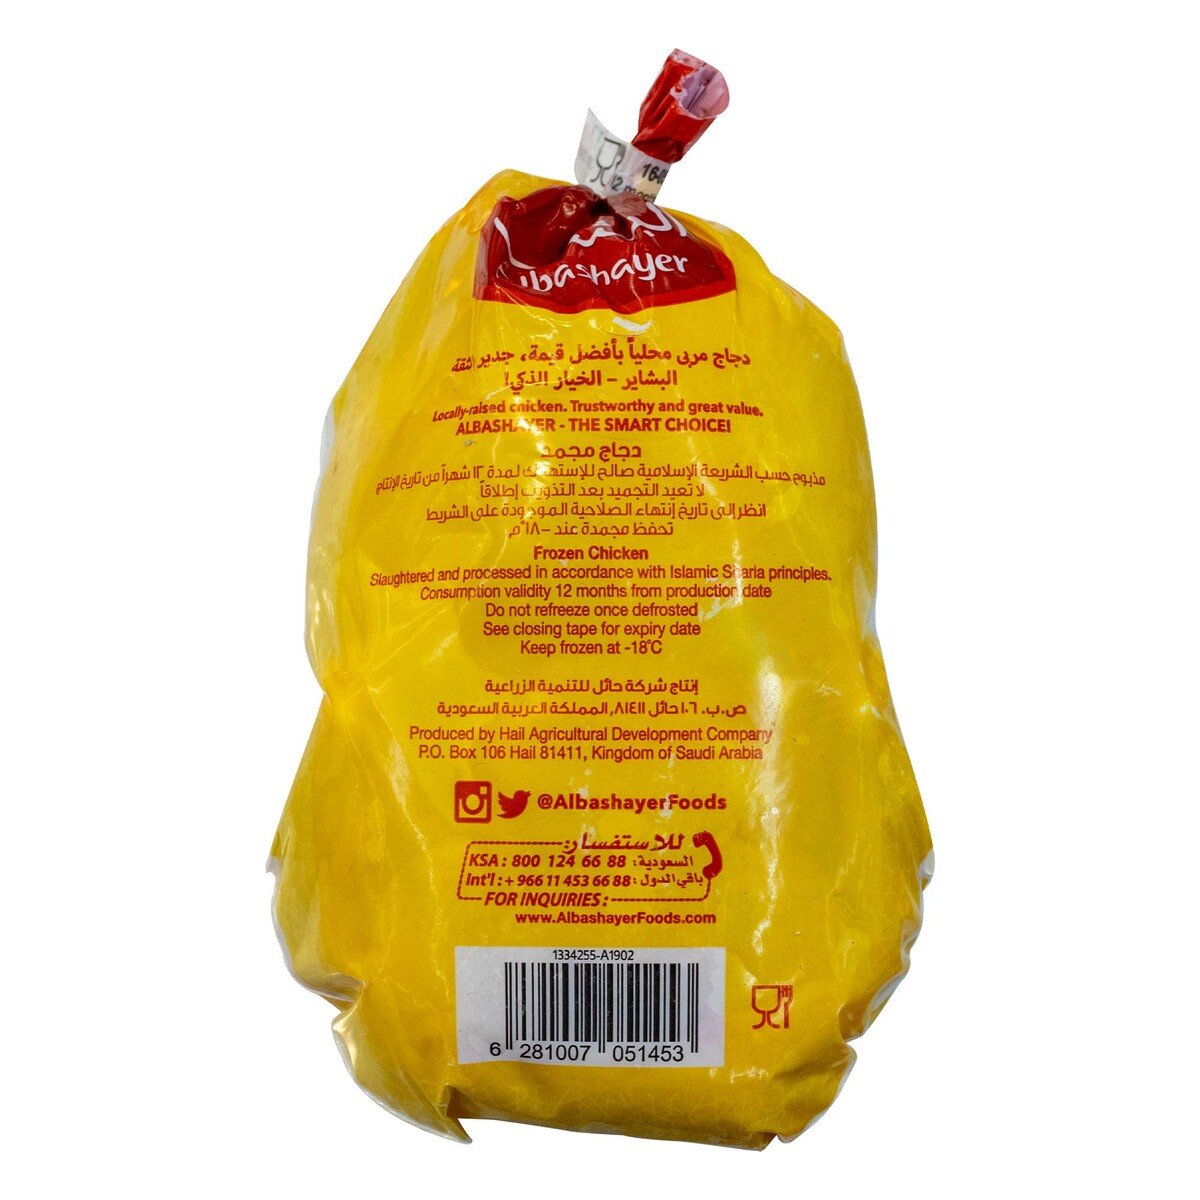 Albashayer Frozen Chicken 700 g